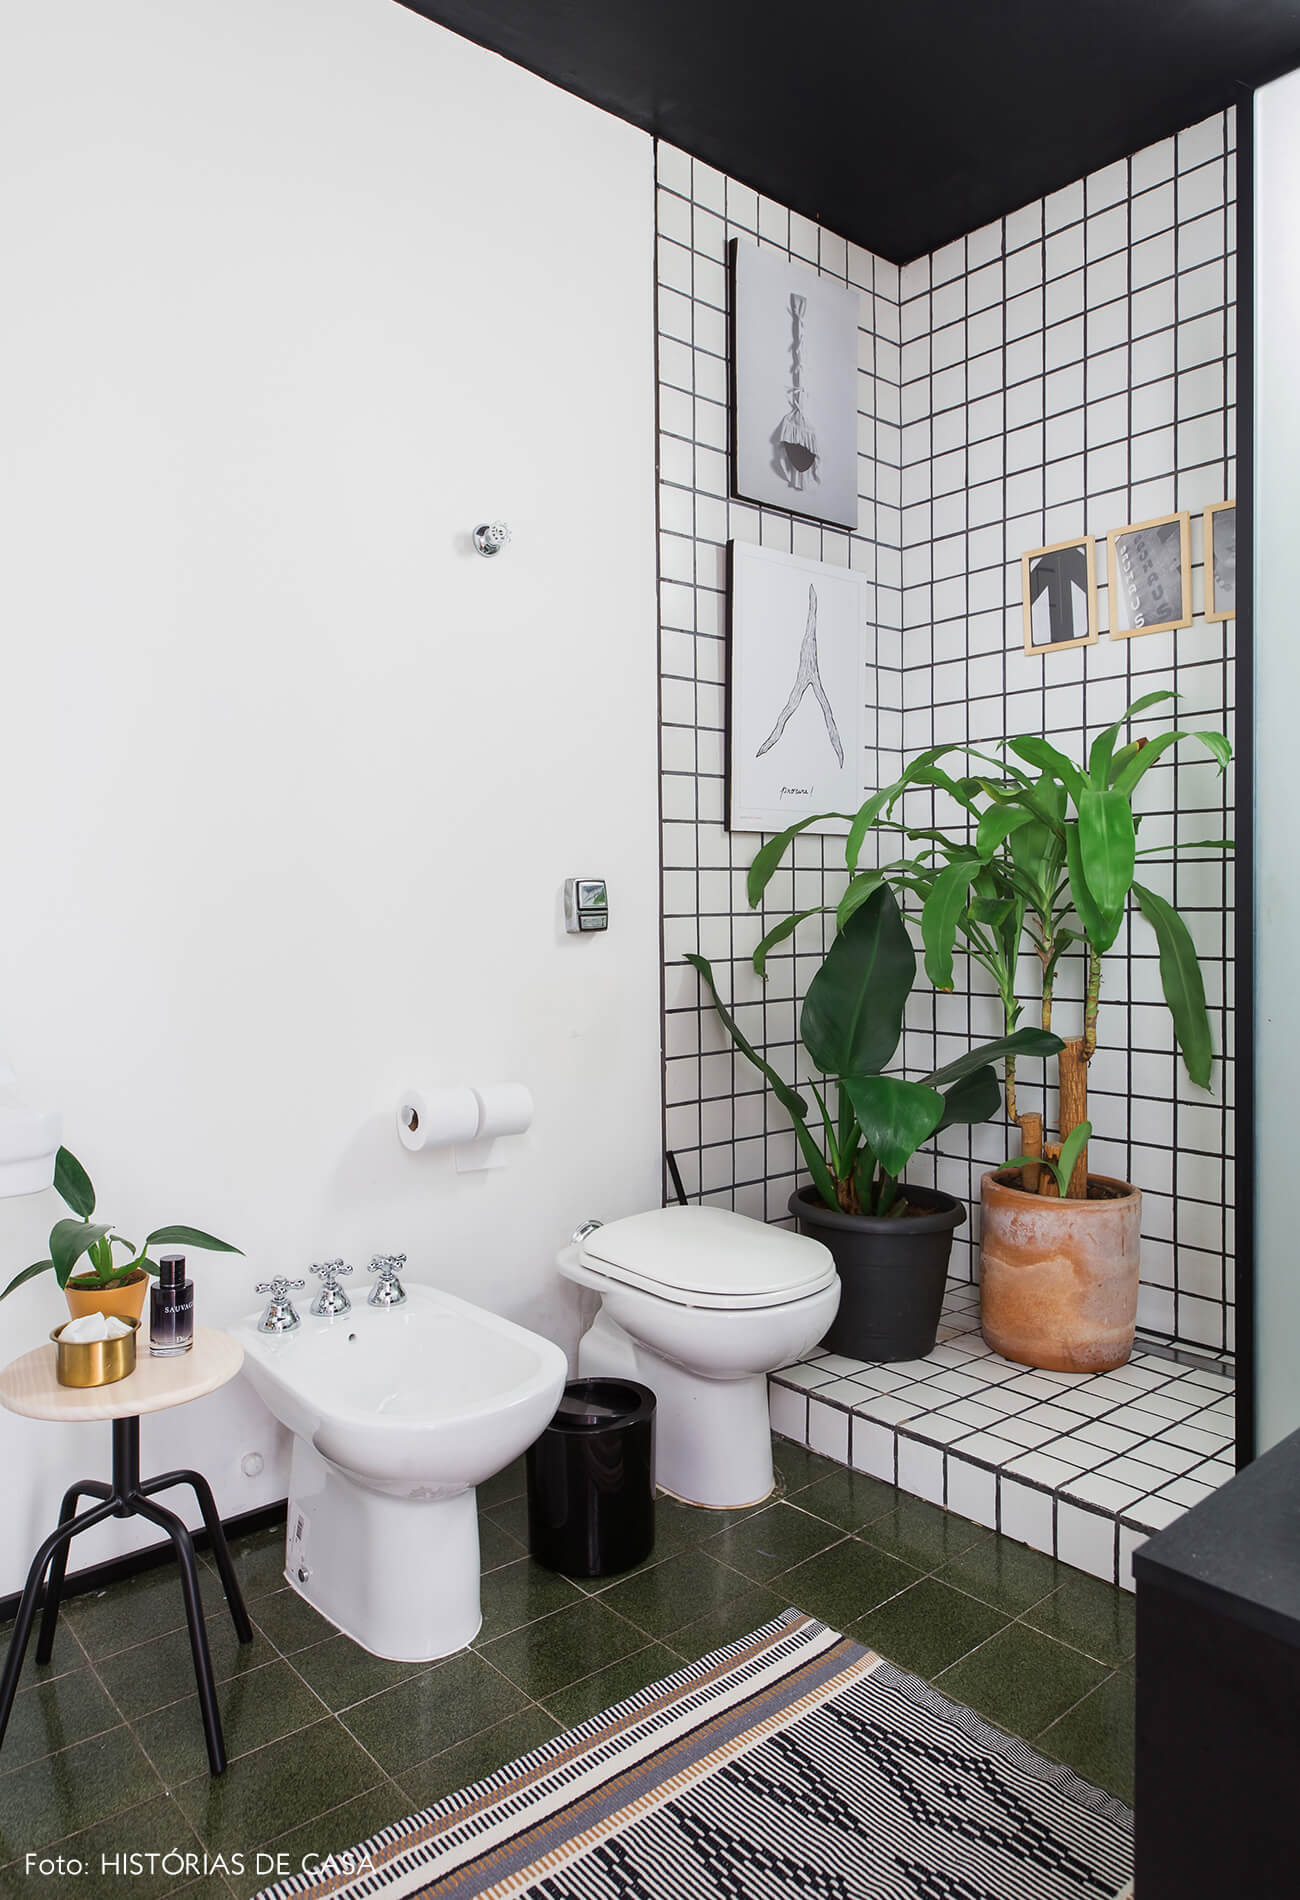 Banheiro com azulejos grid, teto pintado de preto e muitas plantas